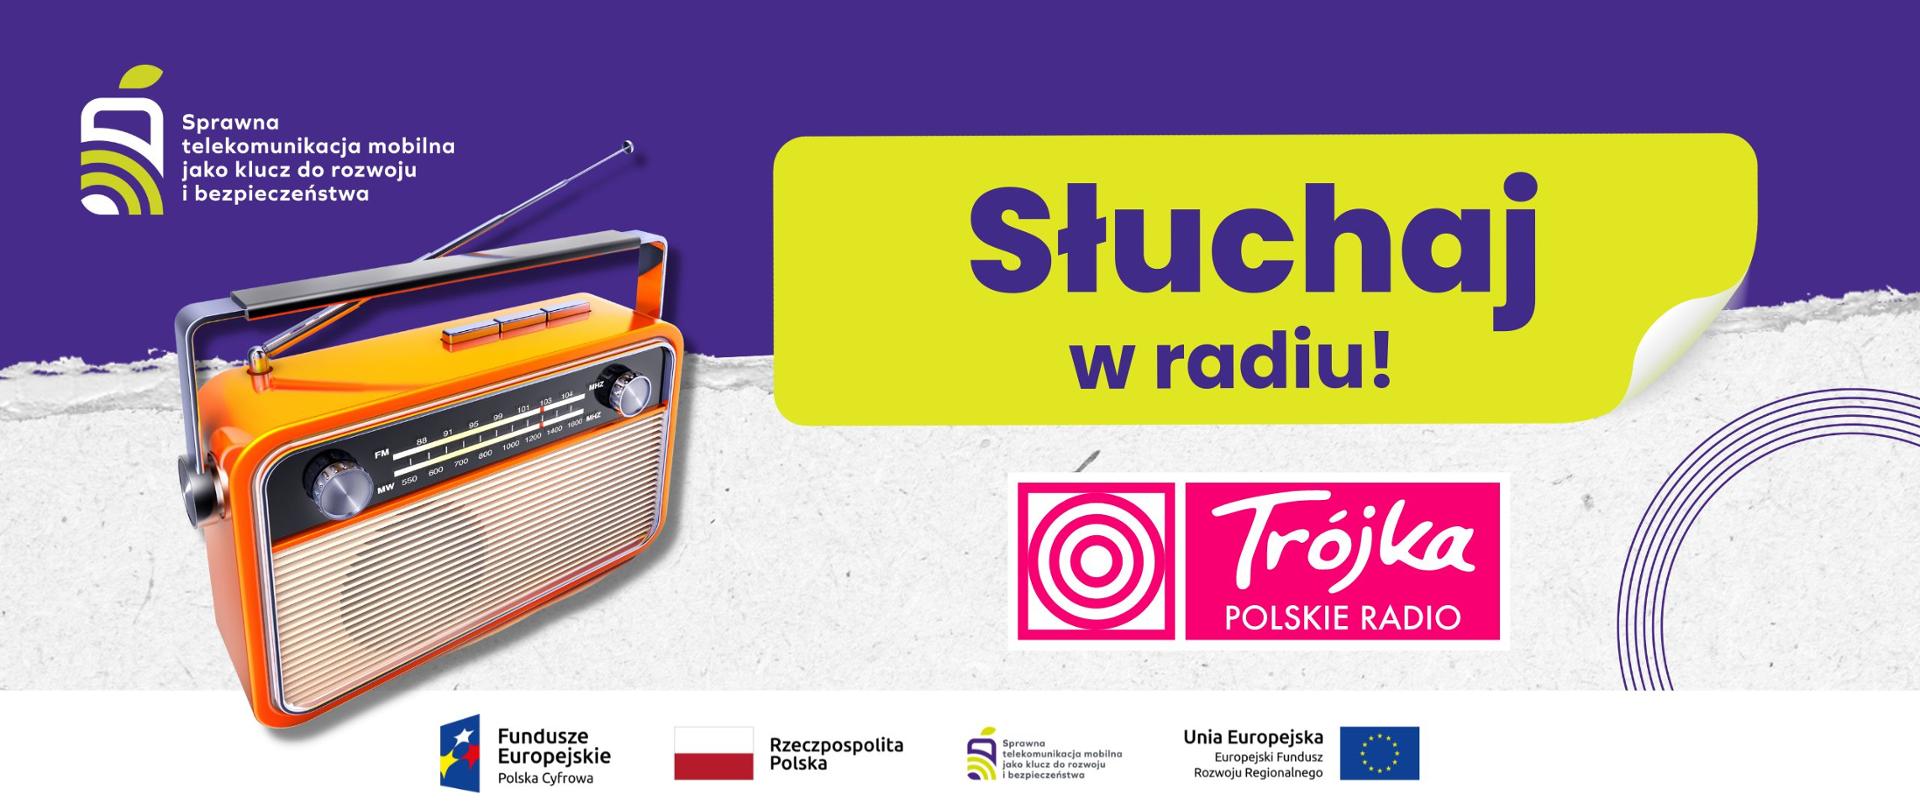 Grafika przedstawia napis Słuchaj w radiu! oraz logotyp Trójka Polskie Radio.